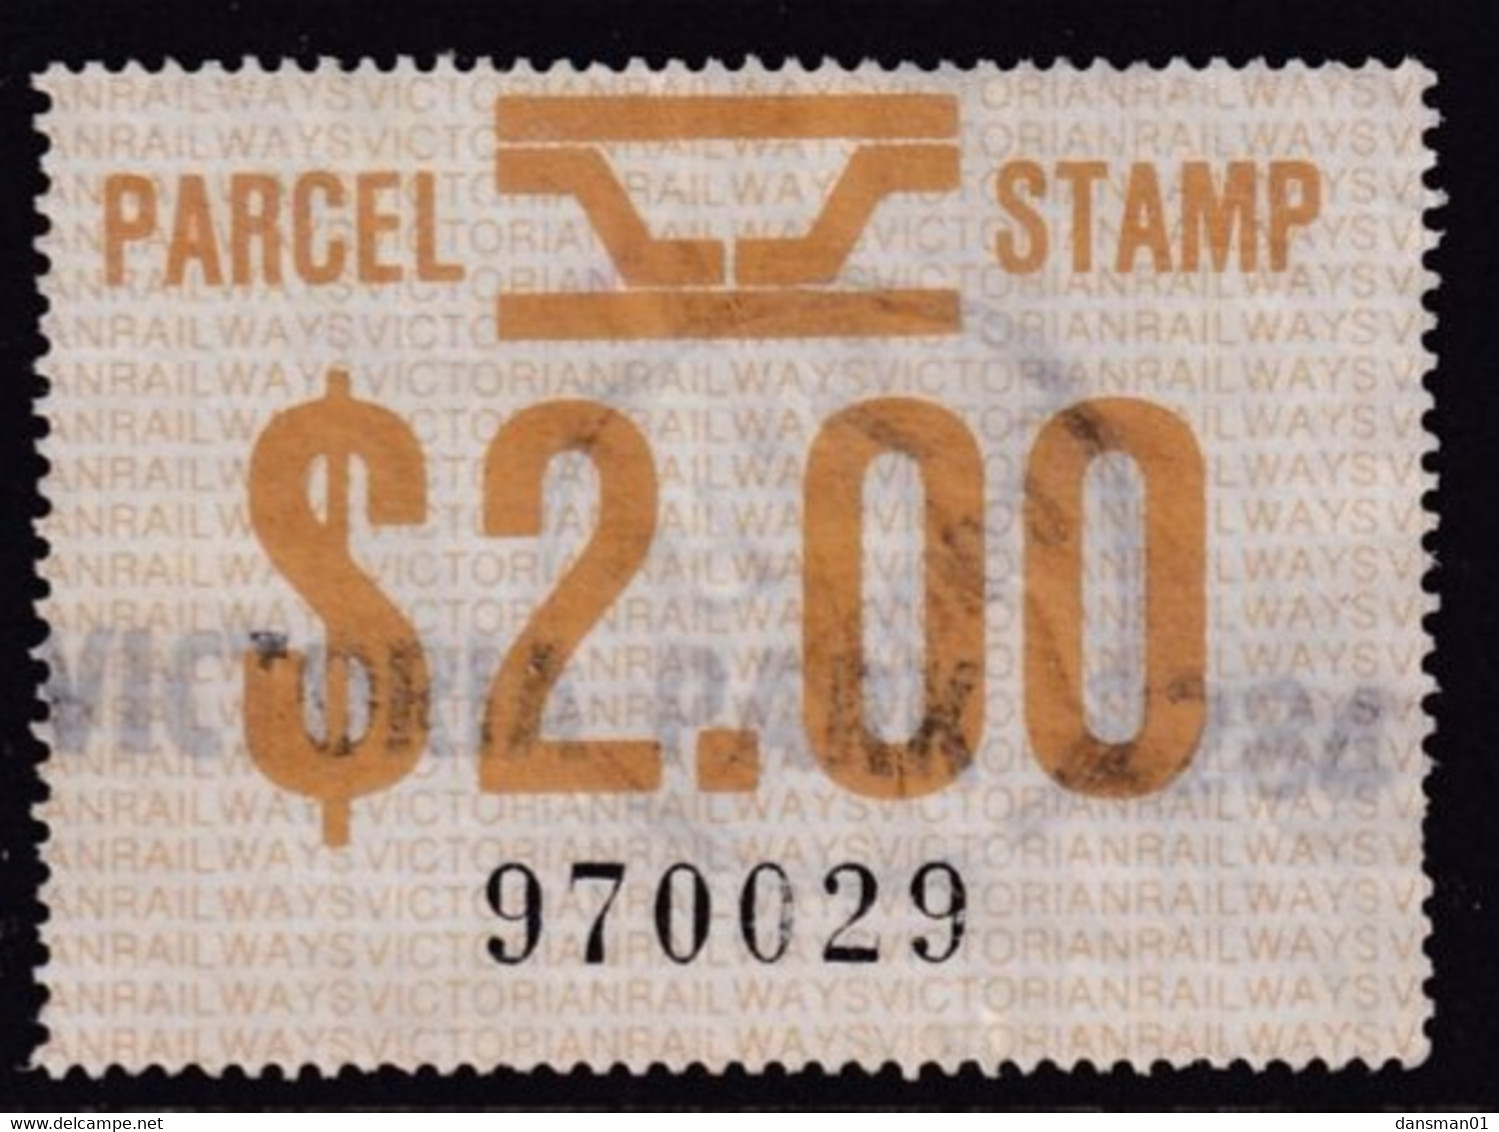 Victoria 1981 Railway Parcel Stamp $2 Used - Plaatfouten En Curiosa